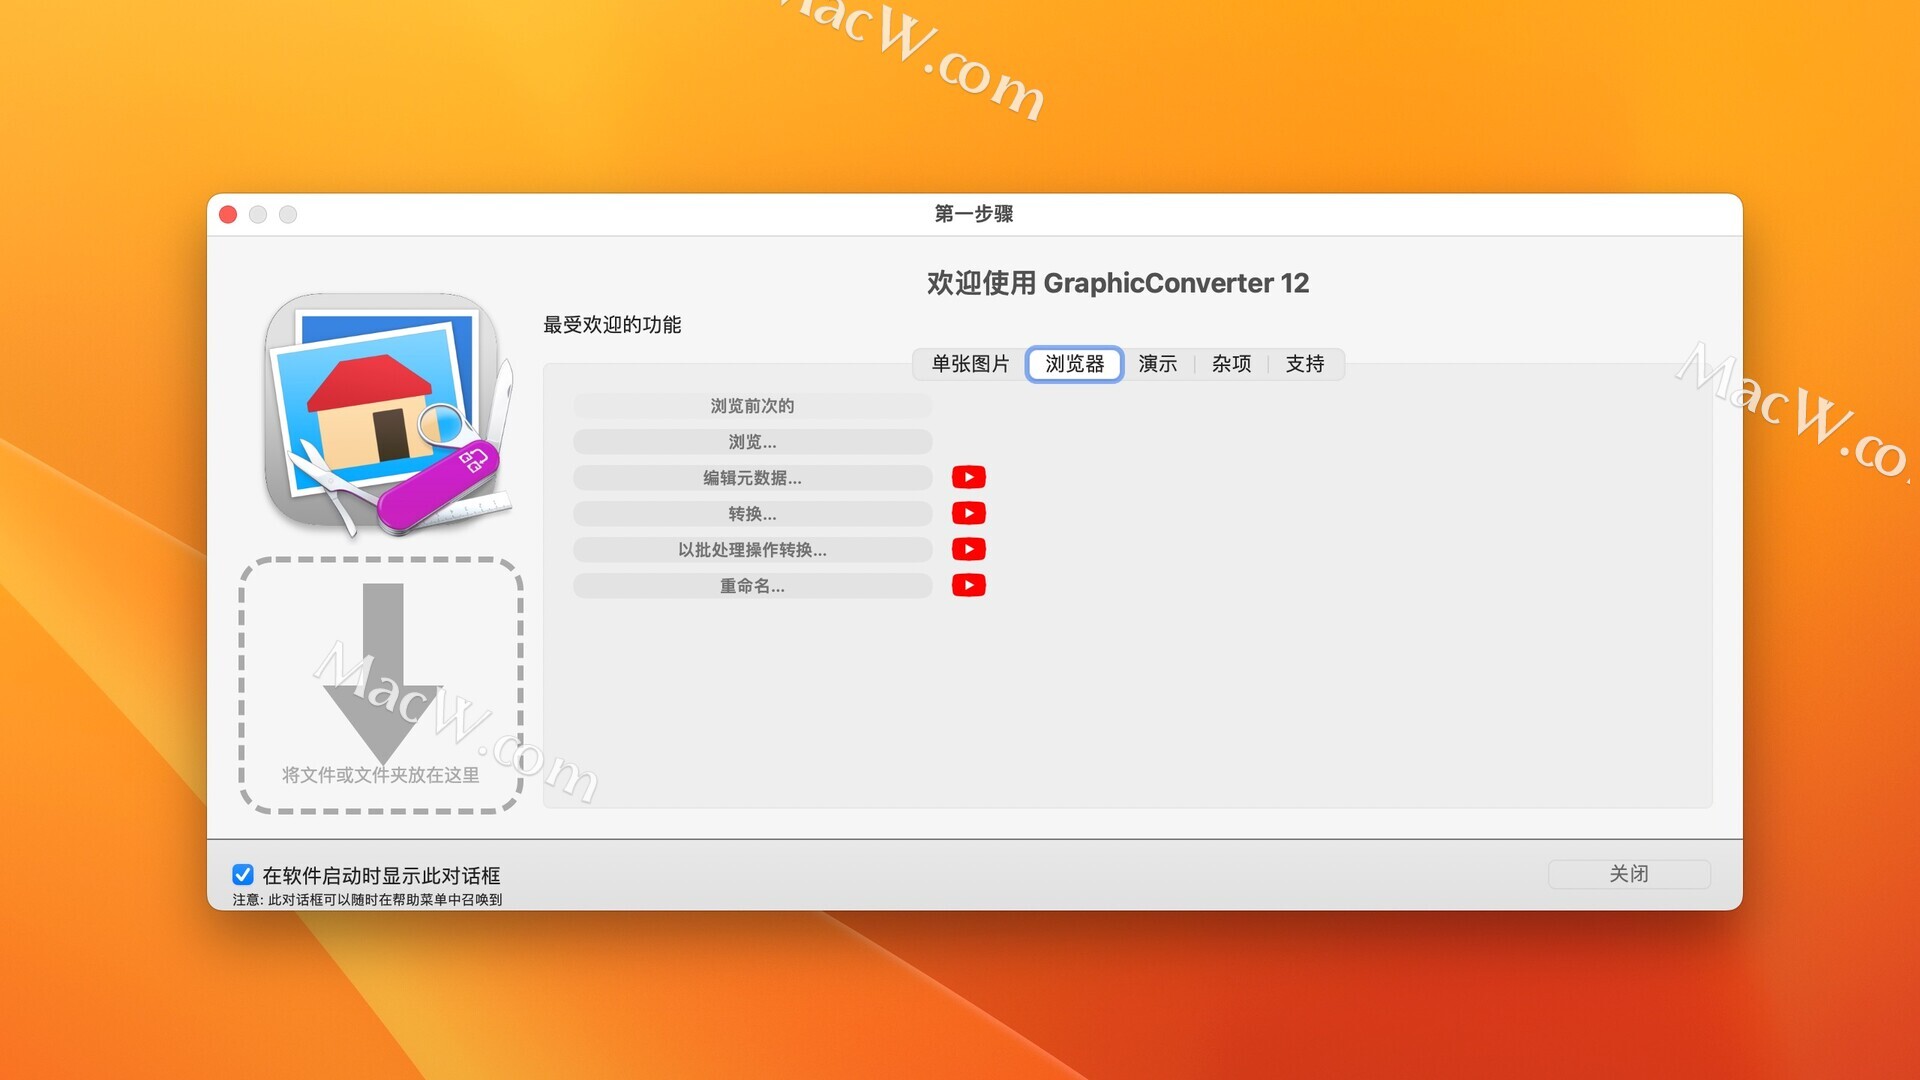 mac高质量图像浏览处理软件 GraphicConverter 12 v12.0.3(6140)中文直装版